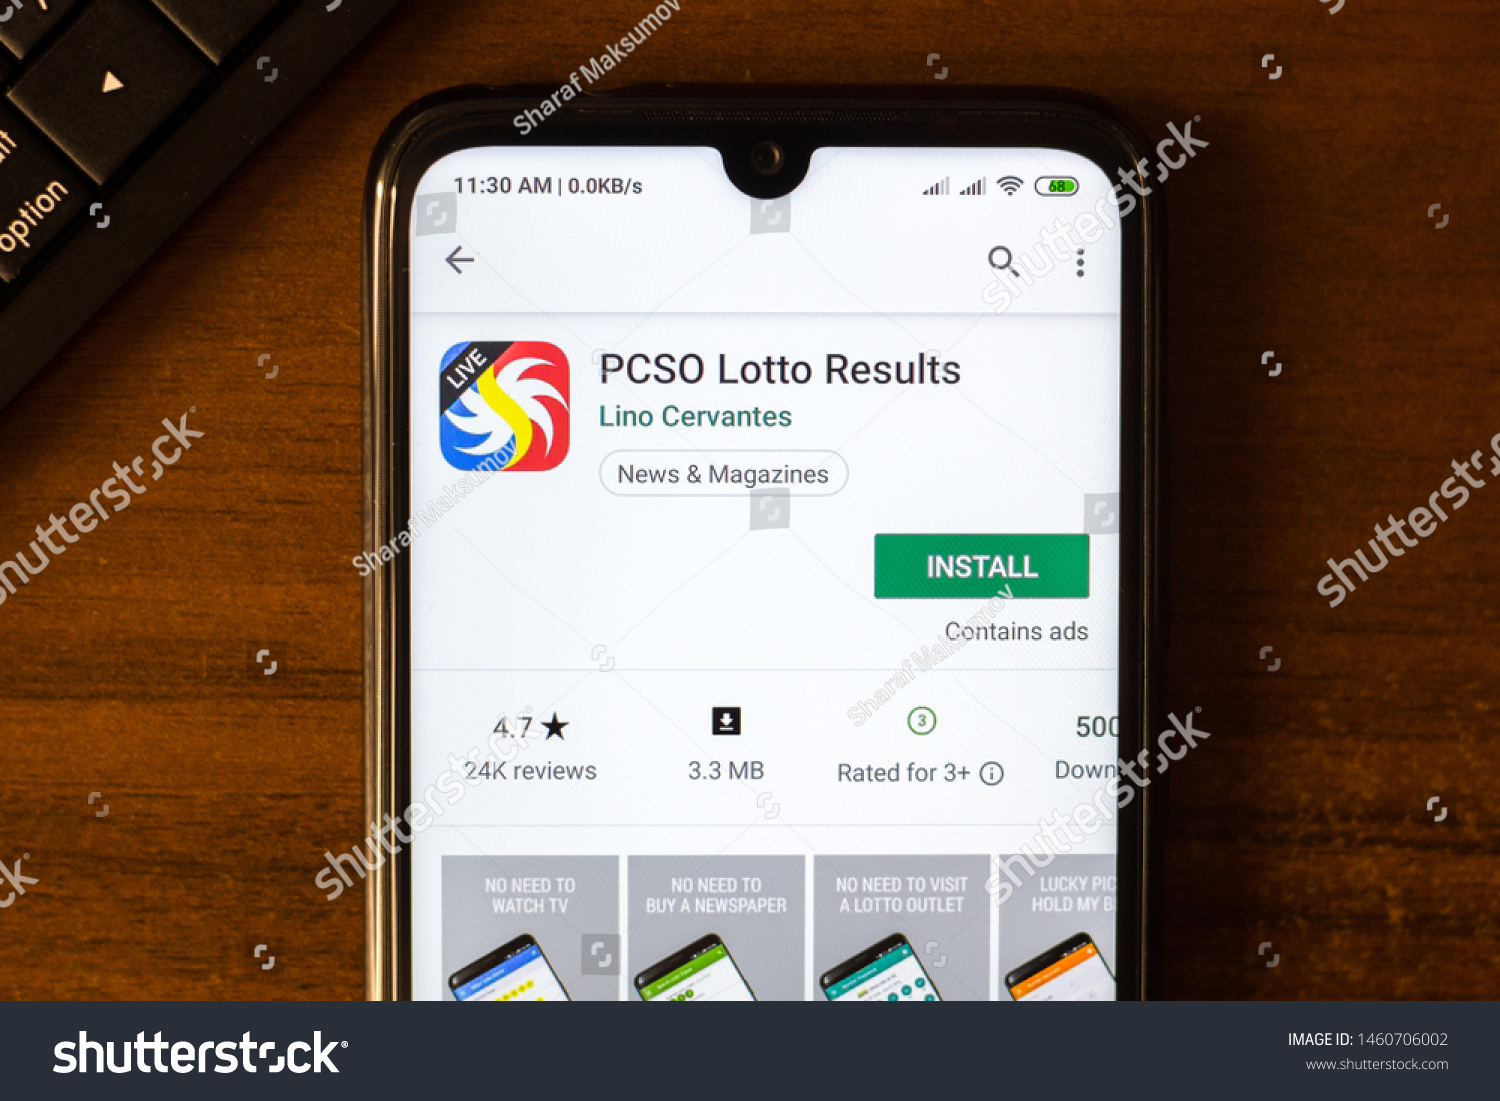 lotto june 26 2019 results